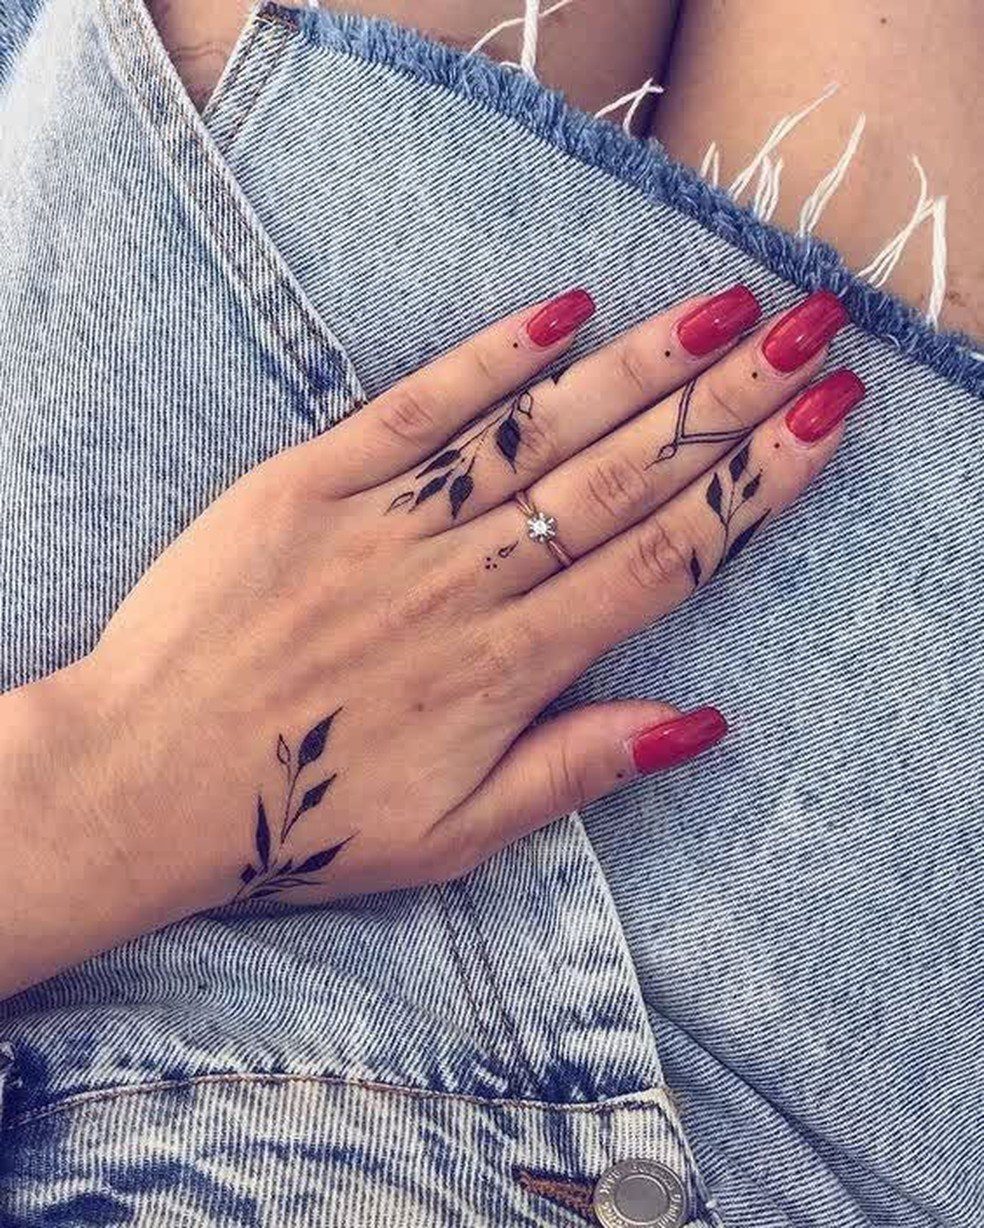 Tatuagem No Dedo